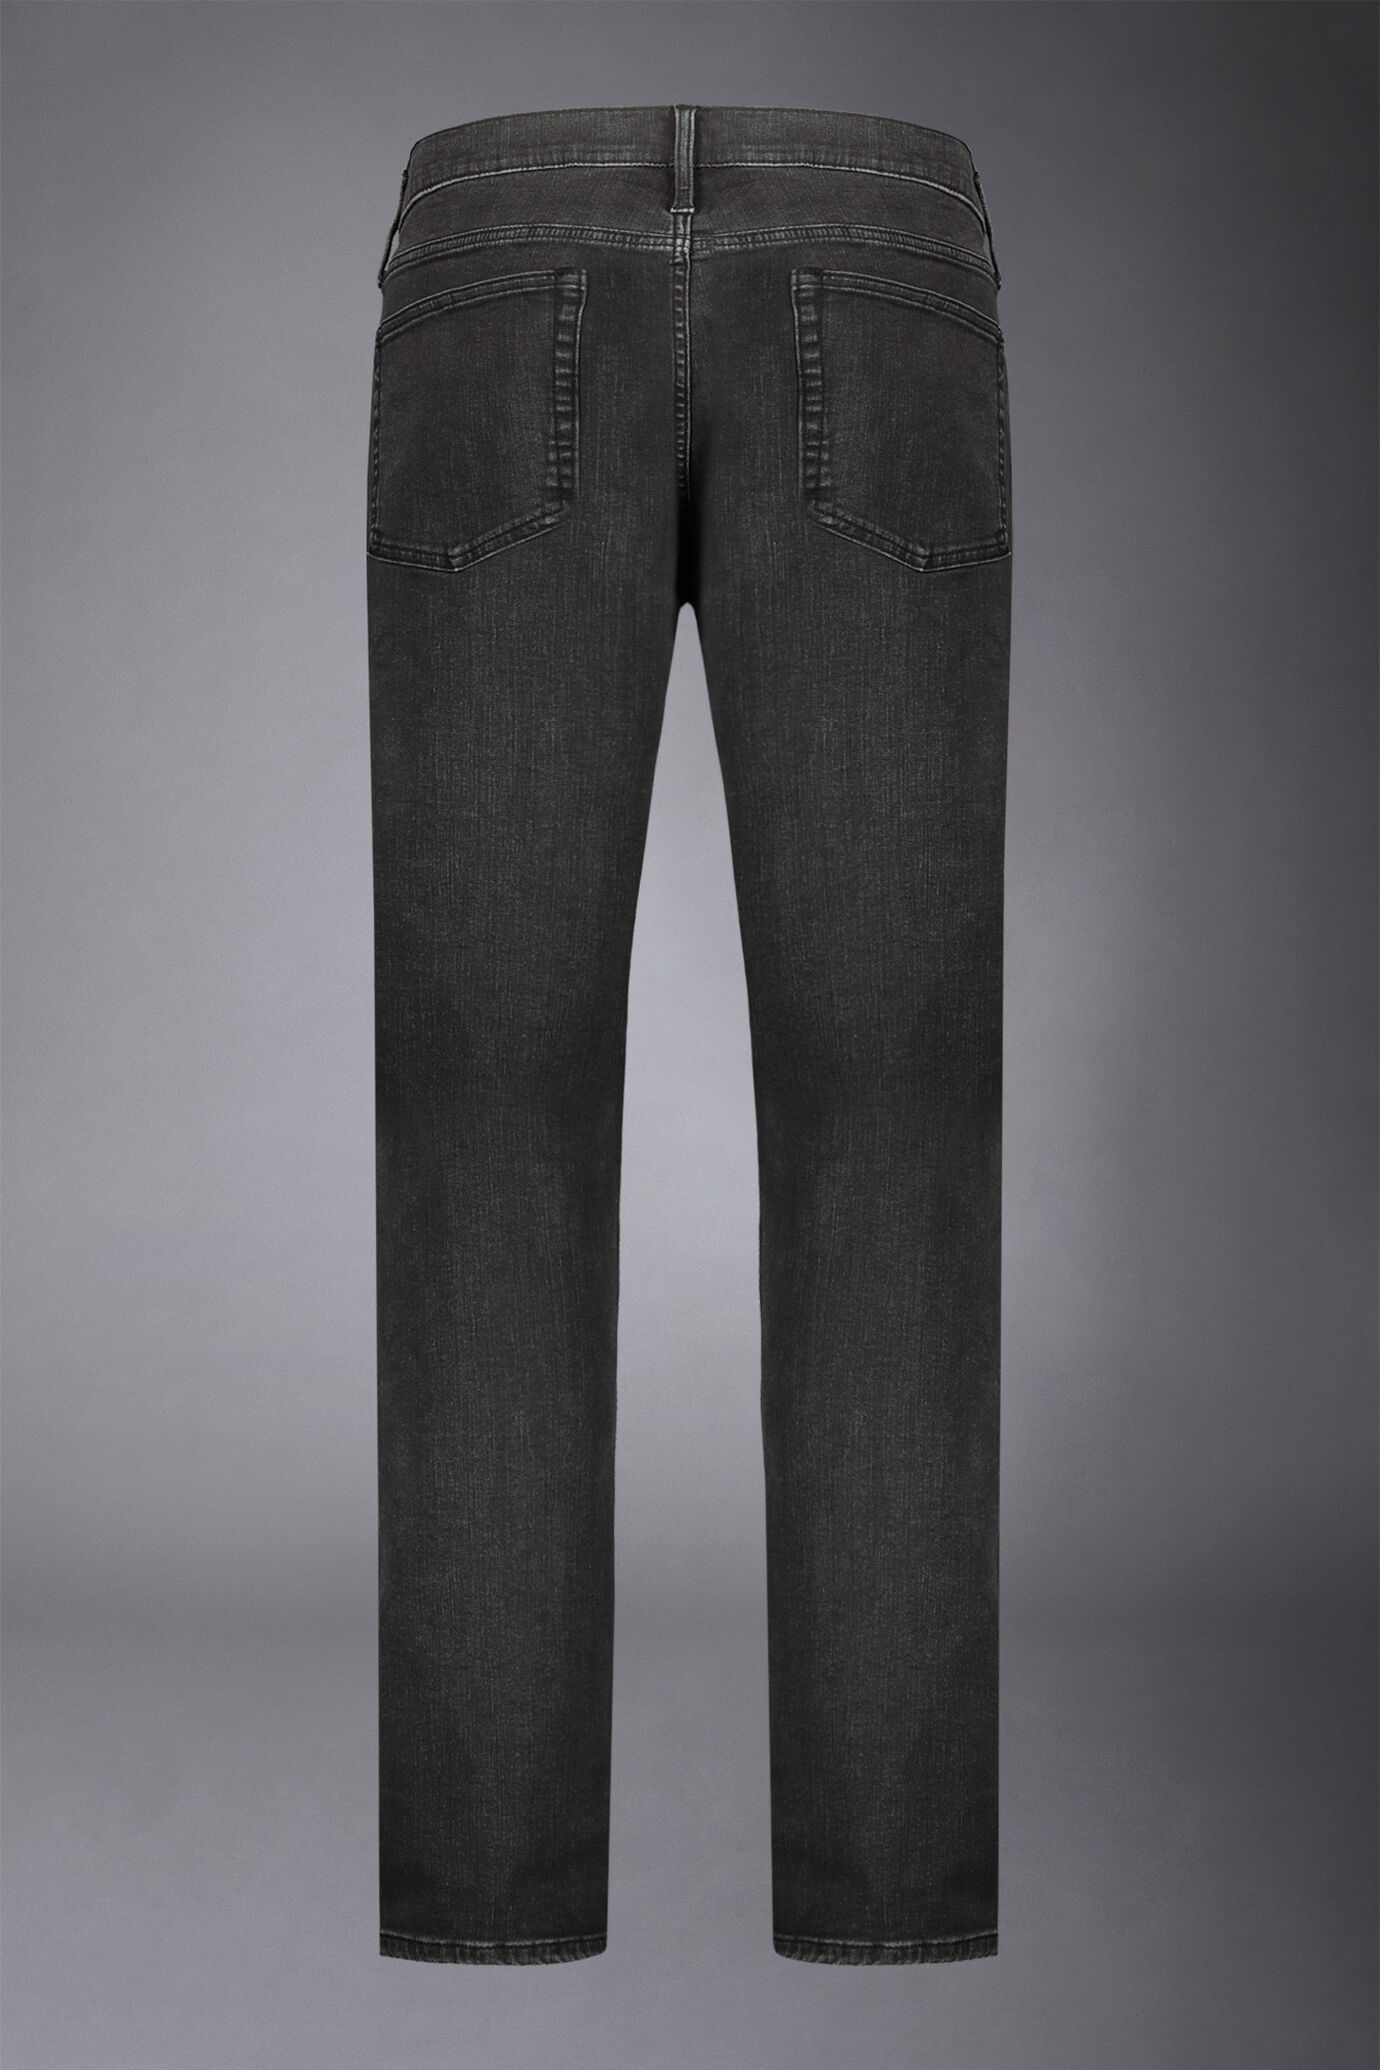 Men's 5-pocket jeans regular fit denim fabric image number 5